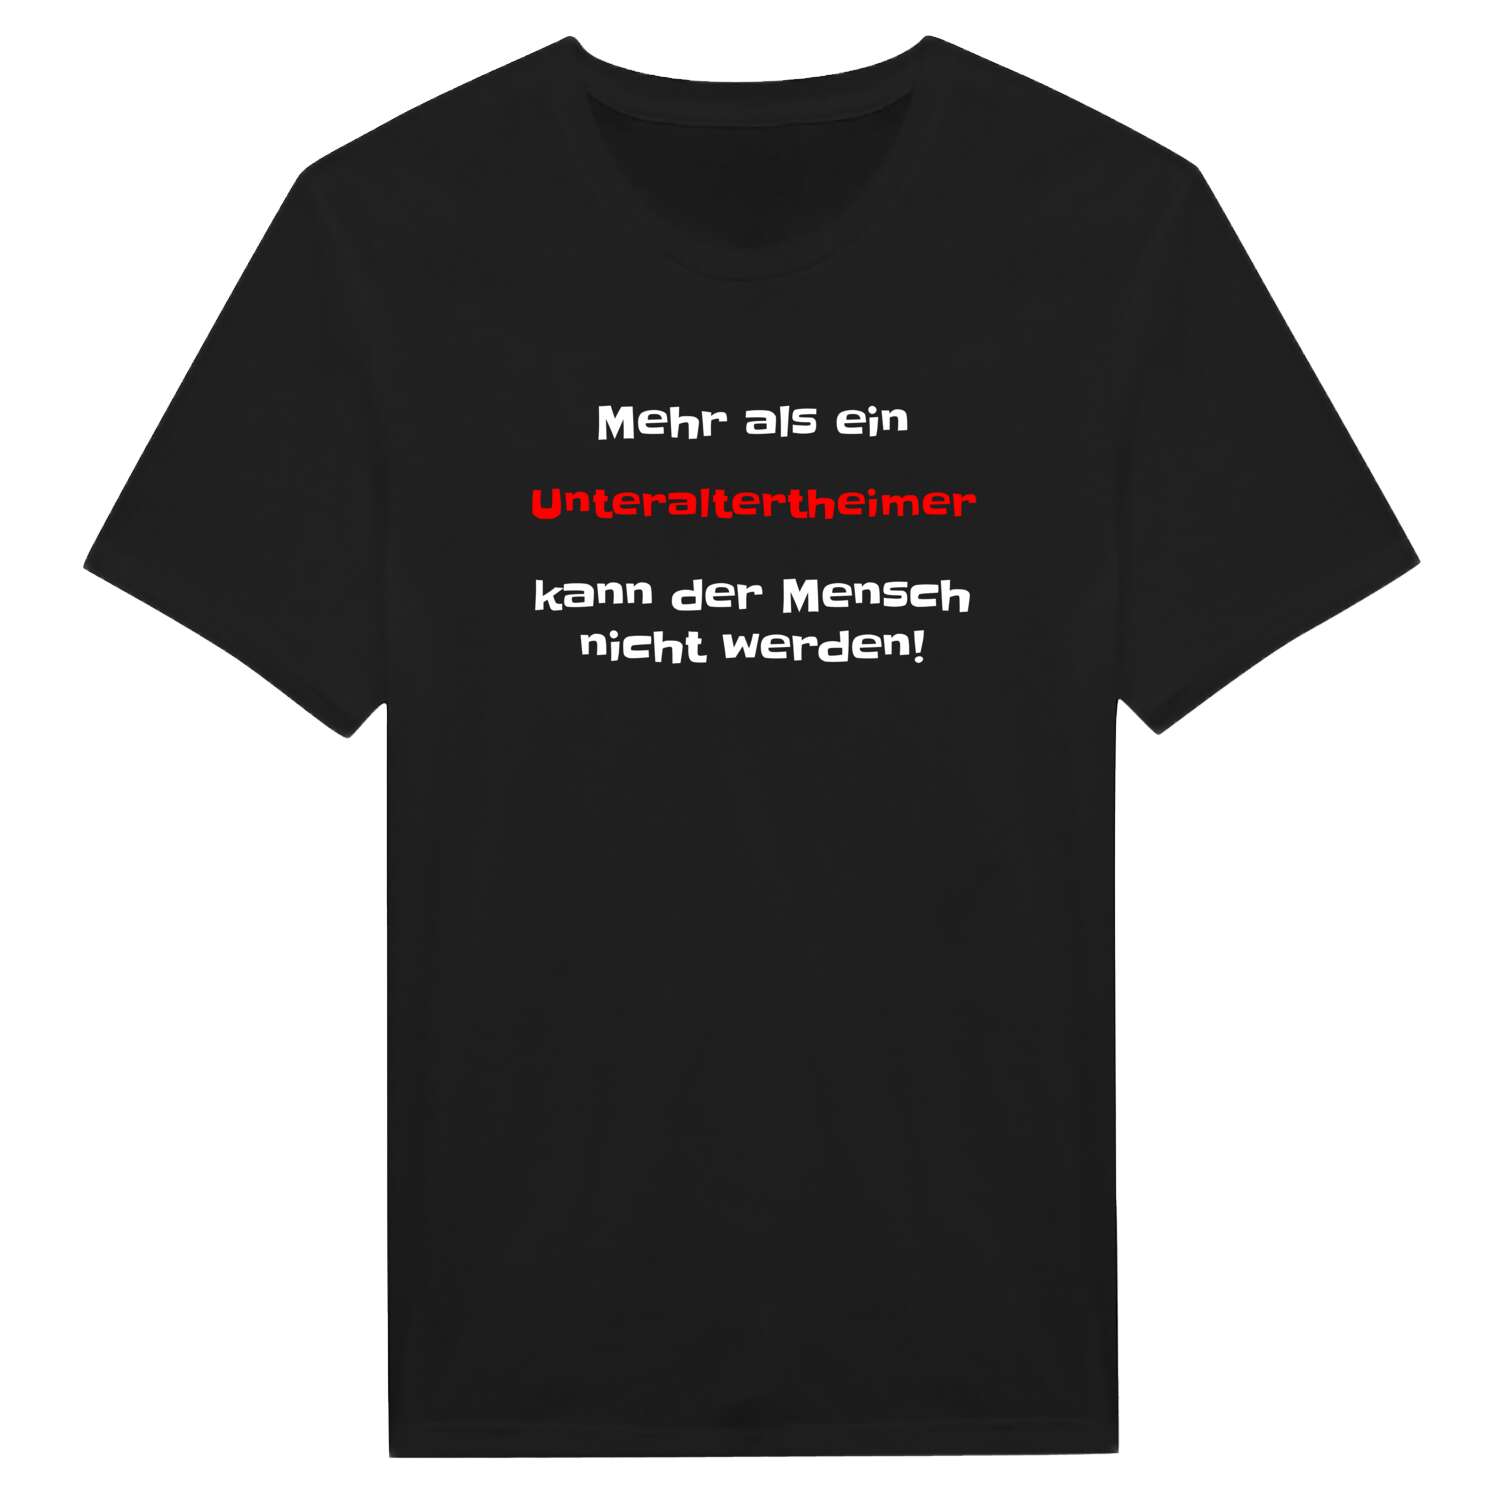 Unteraltertheim T-Shirt »Mehr als ein«